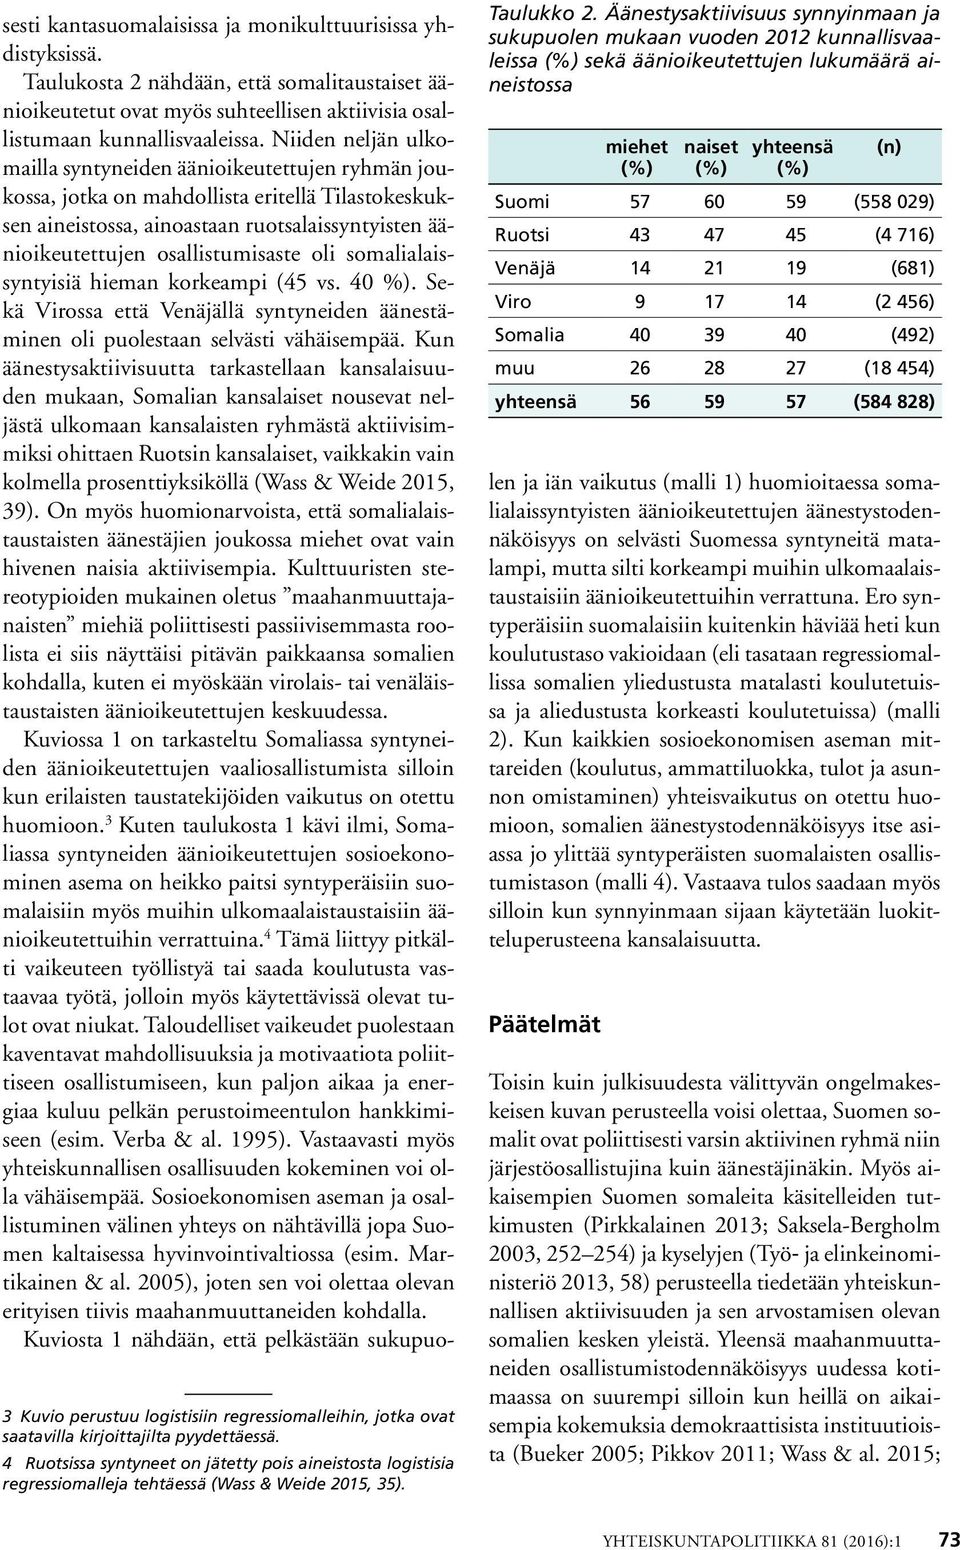 oli somalialaissyntyisiä hieman korkeampi (45 vs. 40 %). Sekä Virossa että Venäjällä syntyneiden äänestäminen oli puolestaan selvästi vähäisempää.